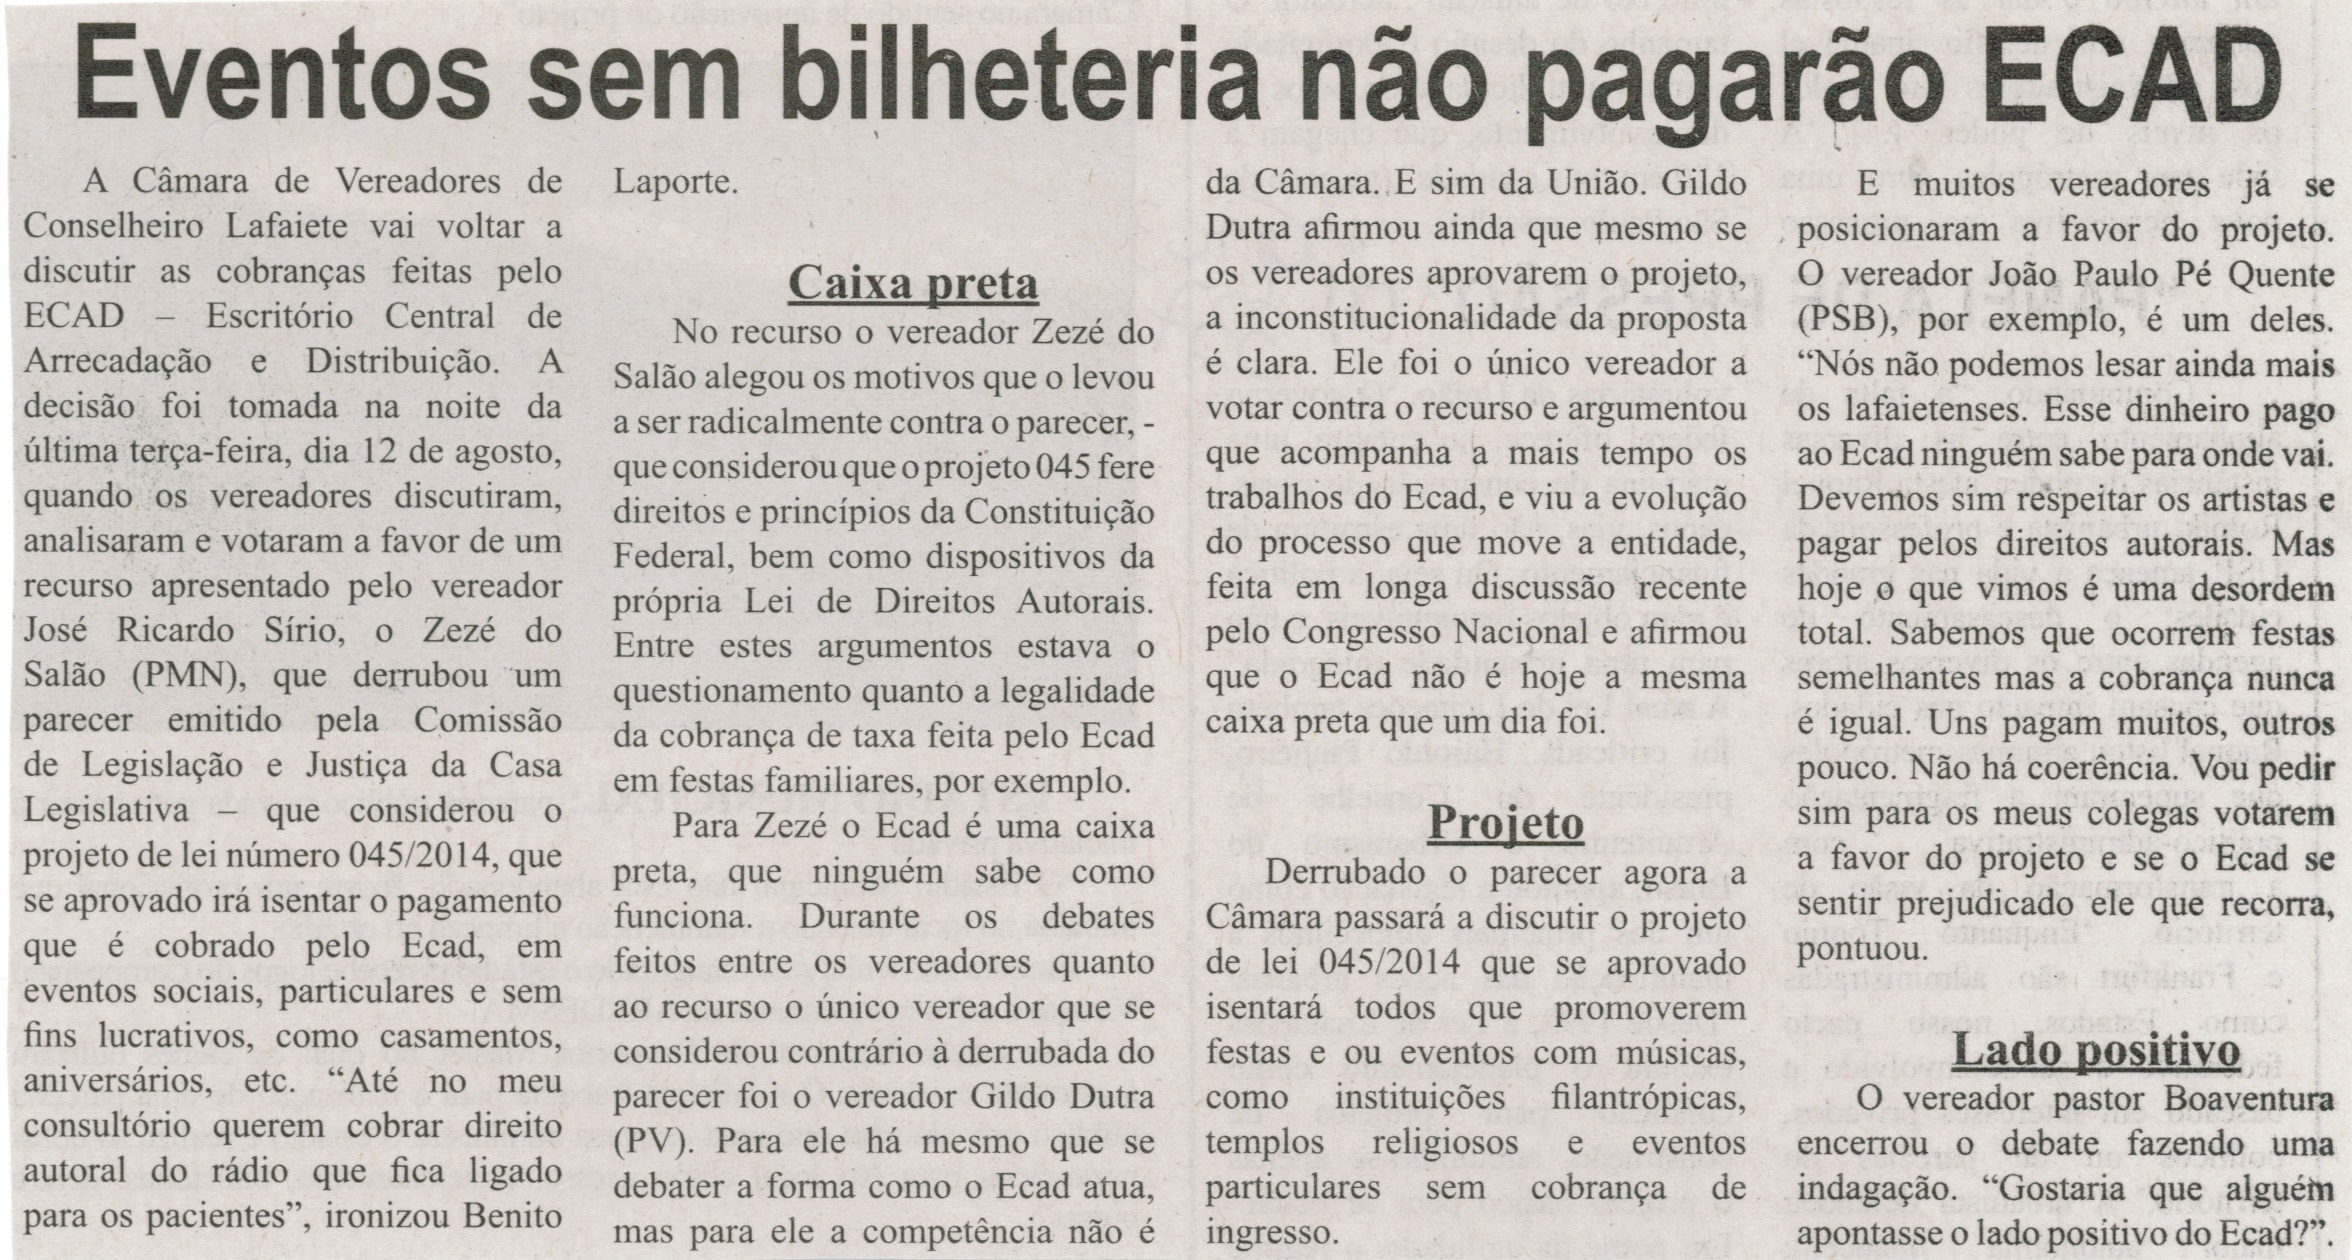 Eventos sem bilheteria não pagarão ECAD. Correio de Minas, Conselheiro Lafaiete, 16 ago. 2014, p. 3.